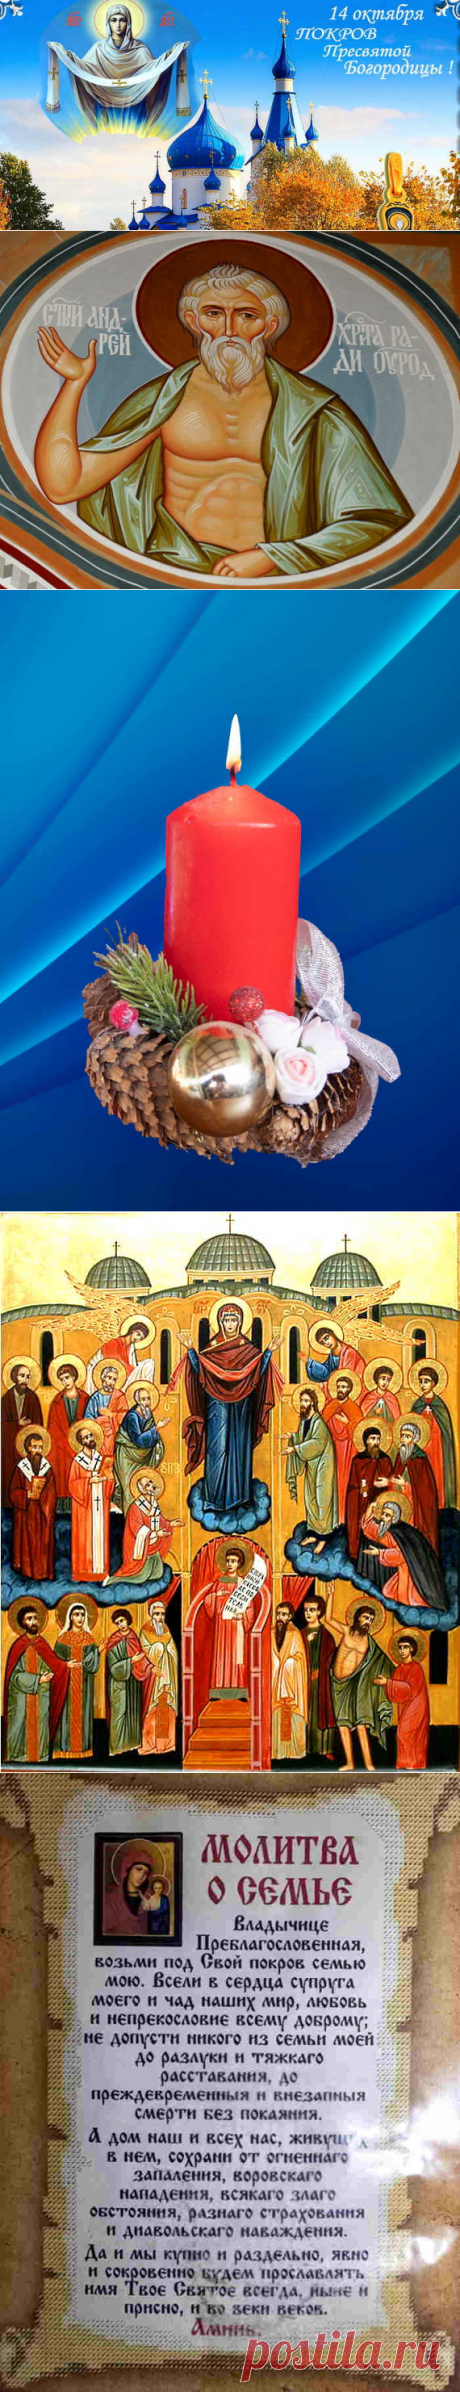 Покрова Пресвятой Богородицы история праздника и традиции церкви